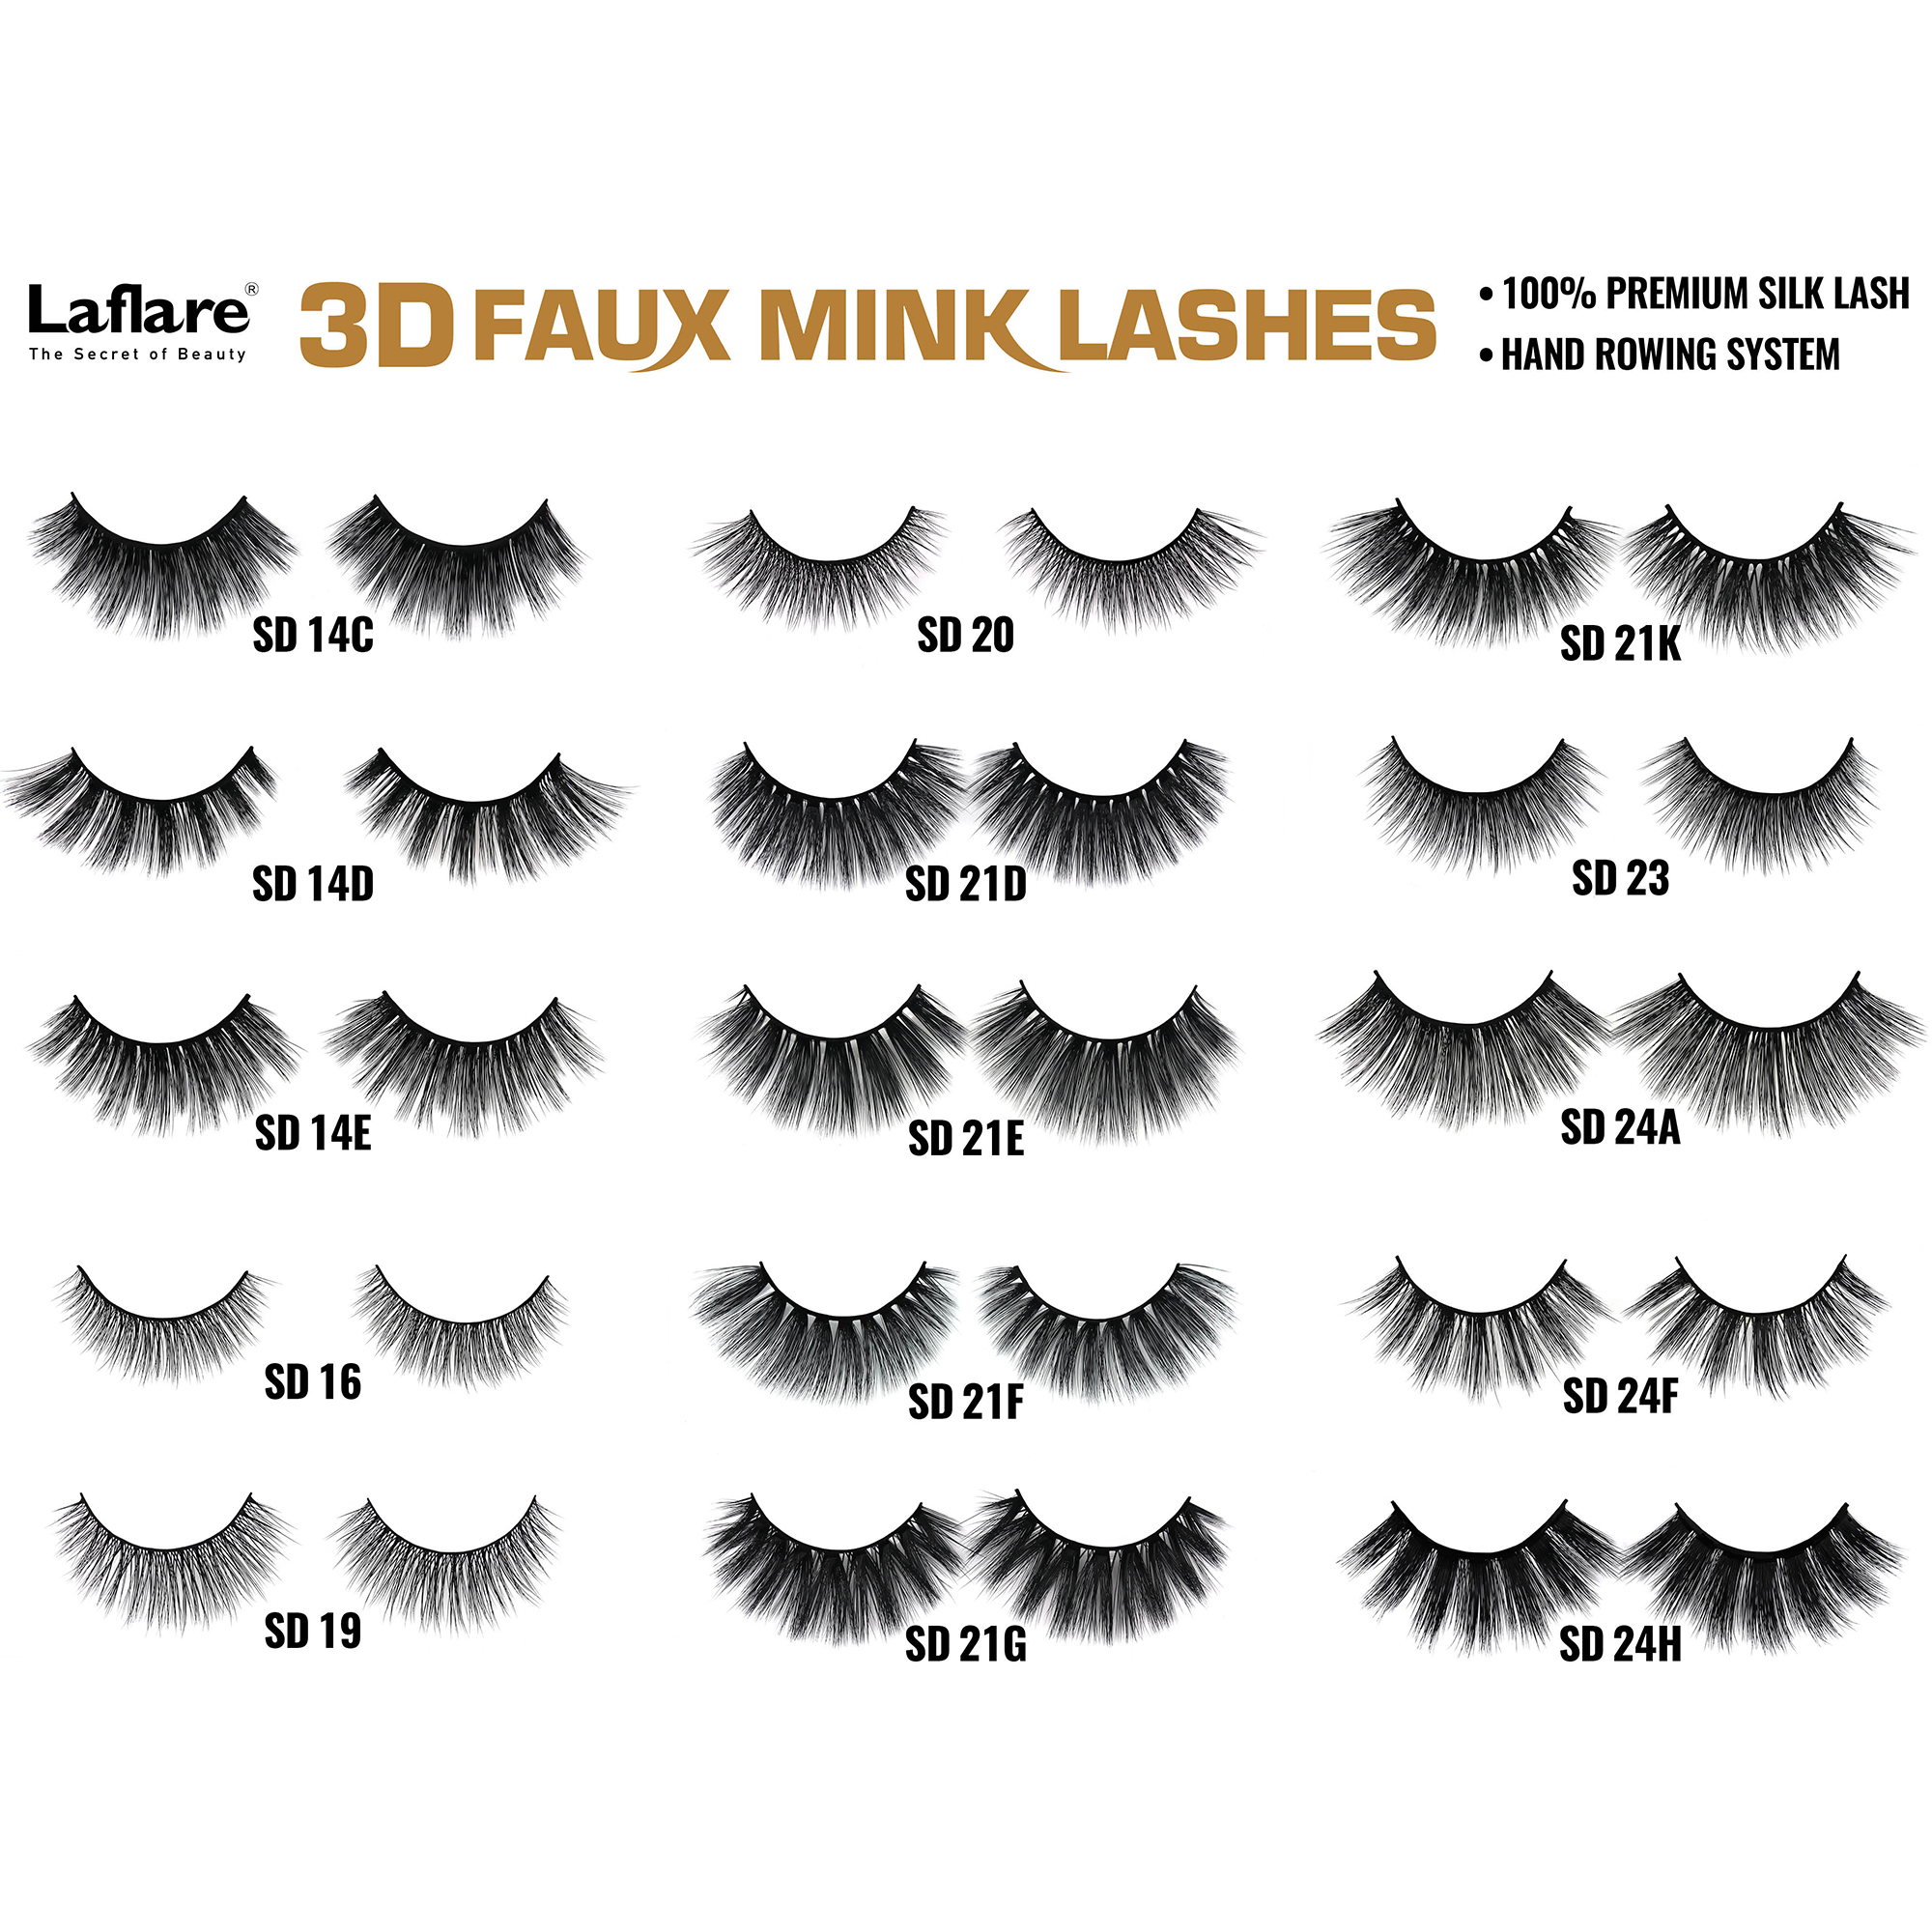 LAFLARE 3d Faux Mink Lashes - SD01G